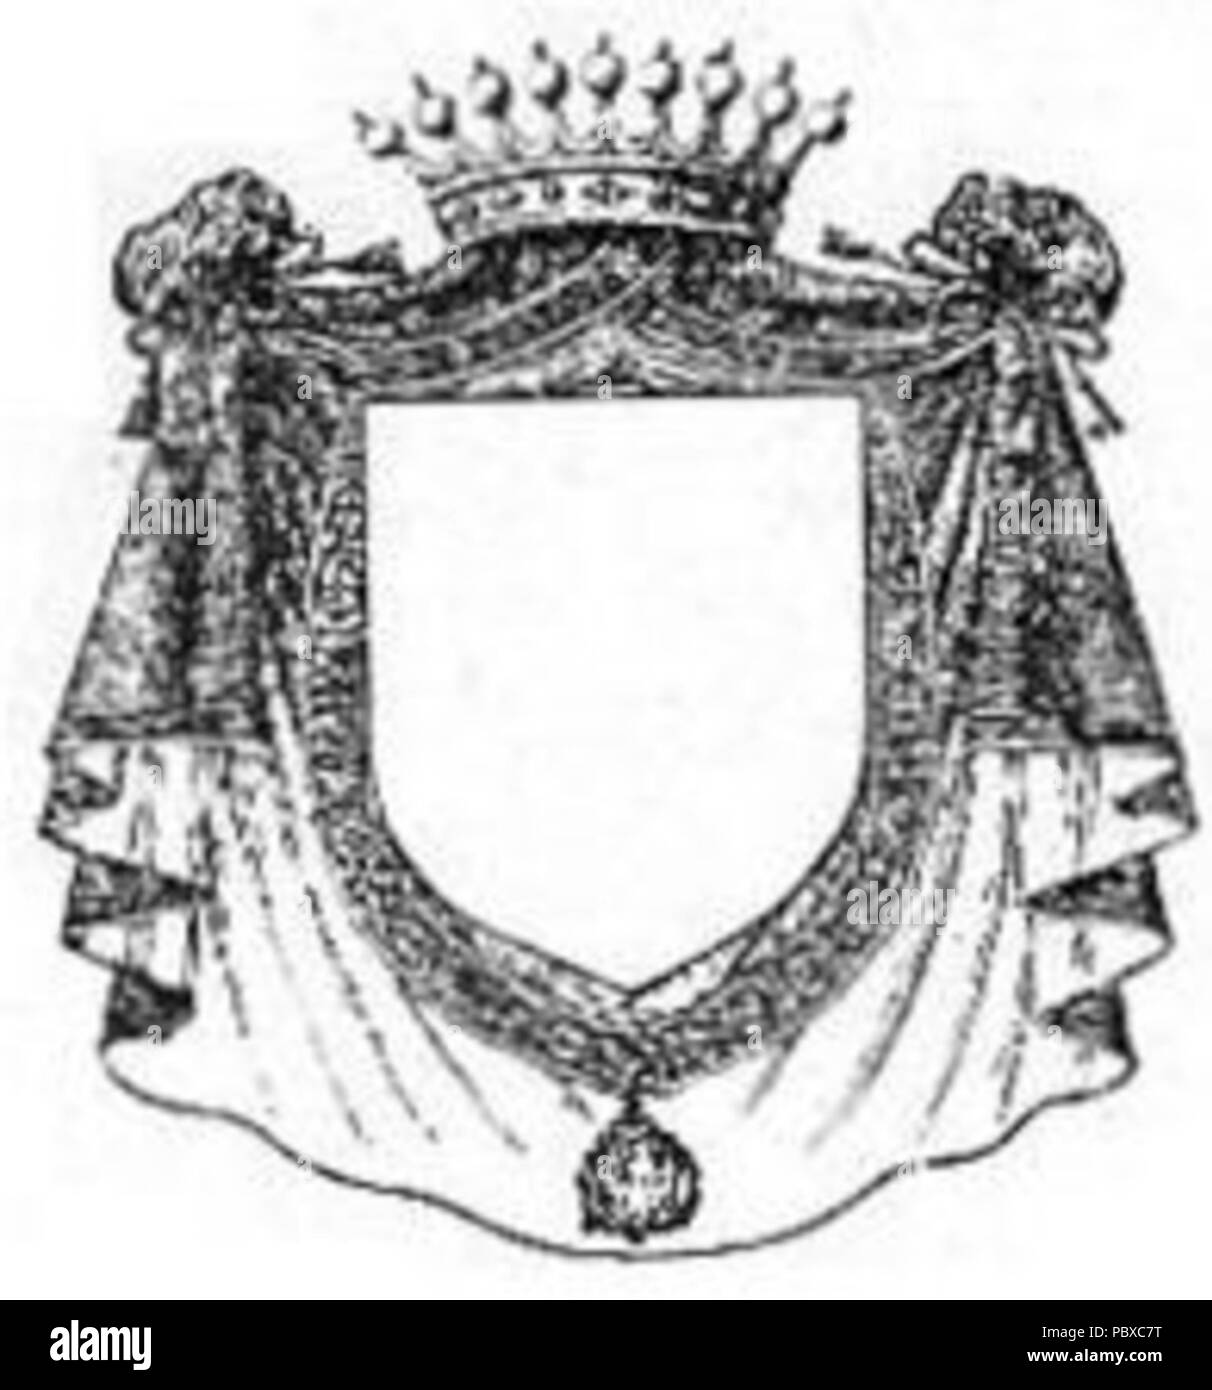 165 distinzione di dignita dei Cavalieri dell'ordine supremo della Santissima Annunziata (1905-oggi) Foto Stock